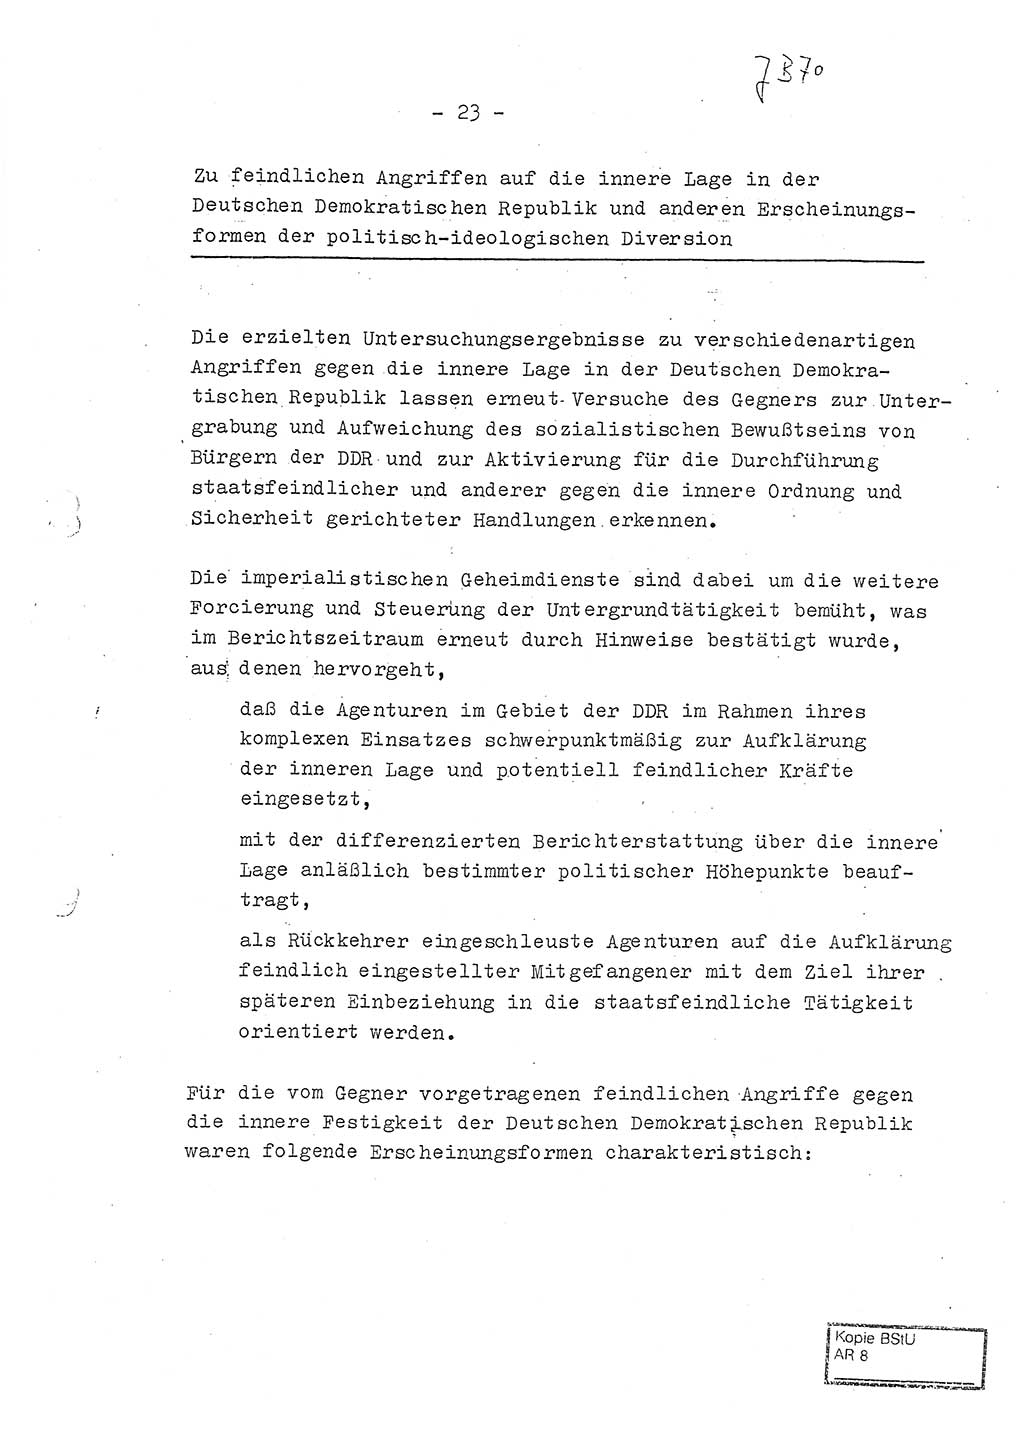 Jahresbericht der Hauptabteilung (HA) Ⅸ 1970, Ministerium für Staatssicherheit (MfS) der Deutschen Demokratischen Republik (DDR), Berlin 1971, Seite 23 (J.-Ber. MfS DDR HA Ⅸ /70 1971, S. 23)